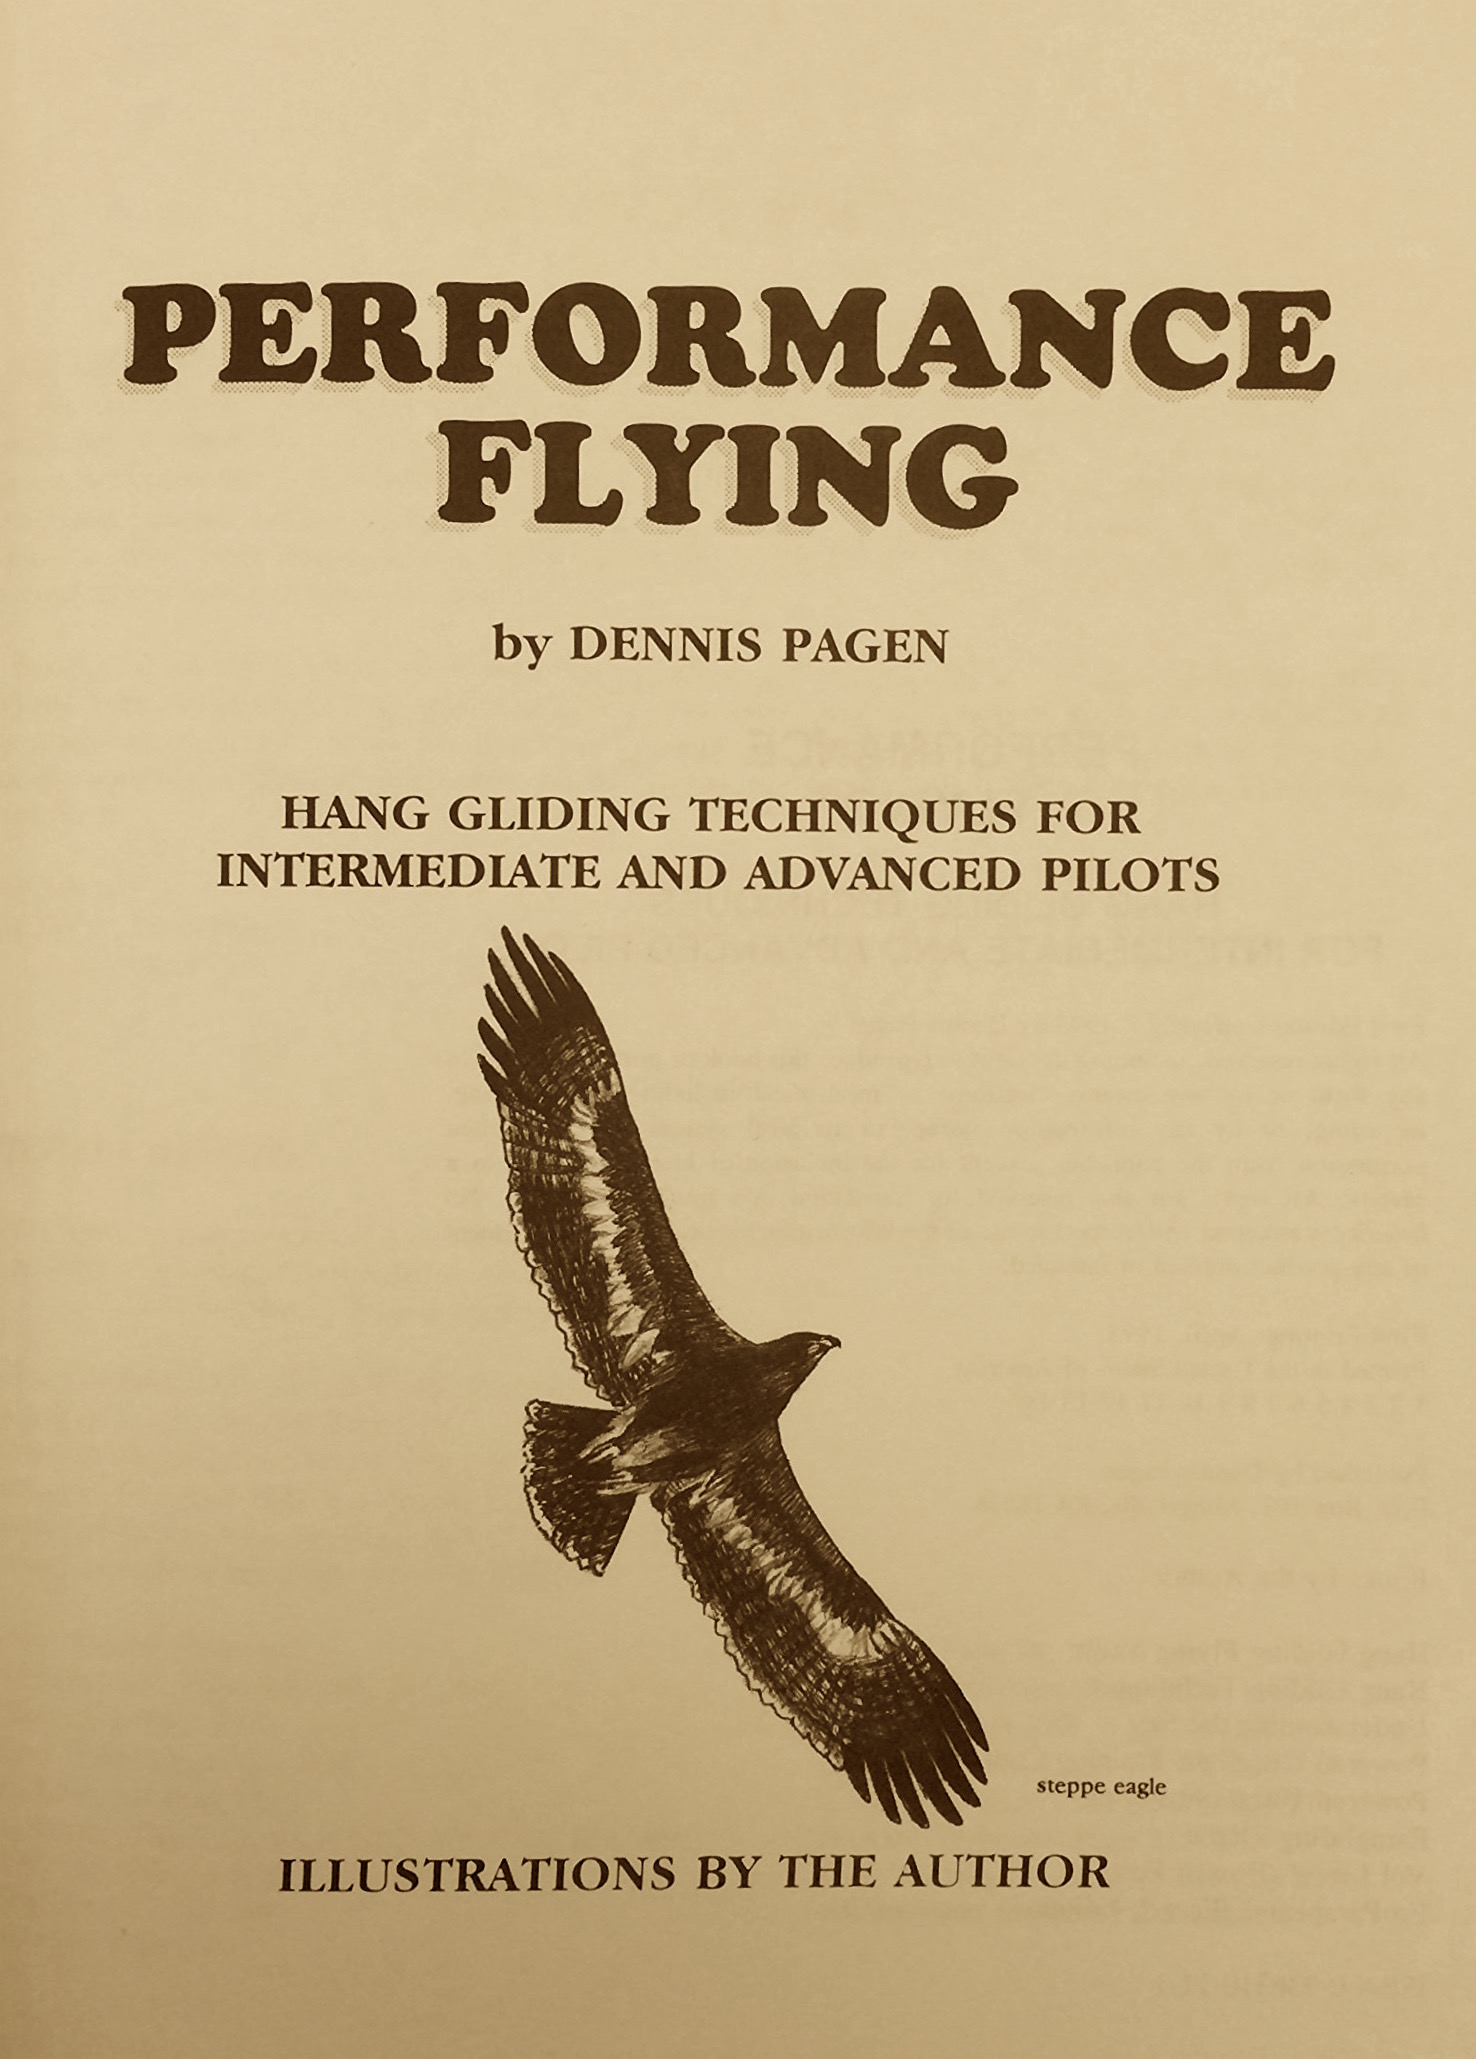 Д.Пэгин "Performance flying" (Русское издание)